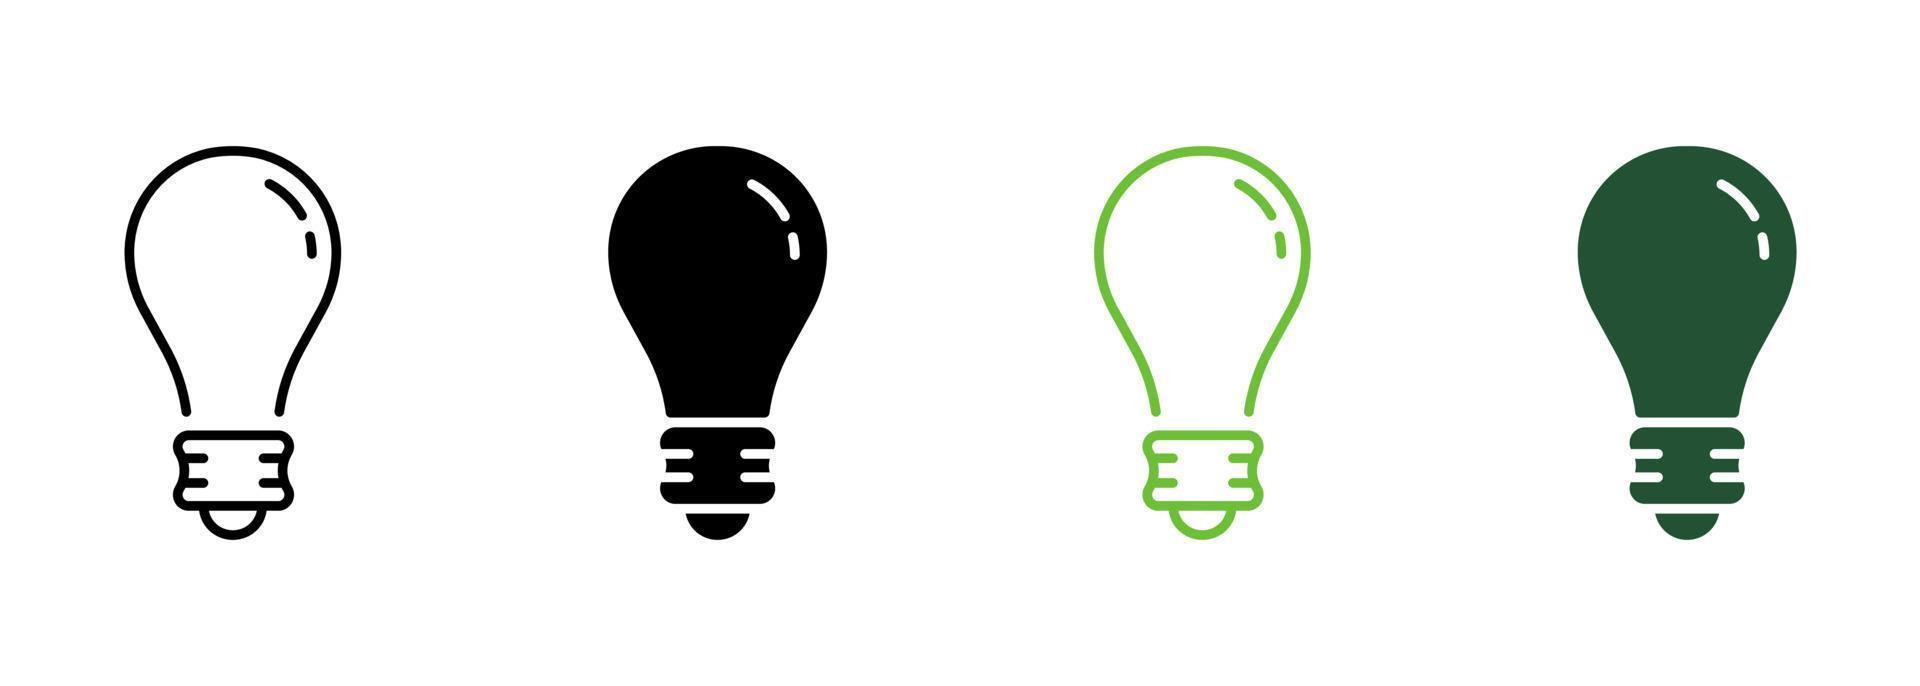 ampoule ligne électrique basse énergie et jeu d'icônes de silhouette. pictogramme d'énergie électrique d'ampoule. innovation, inspiration, réflexion, solution, icône de concept de lampe idée. illustration vectorielle isolée. vecteur